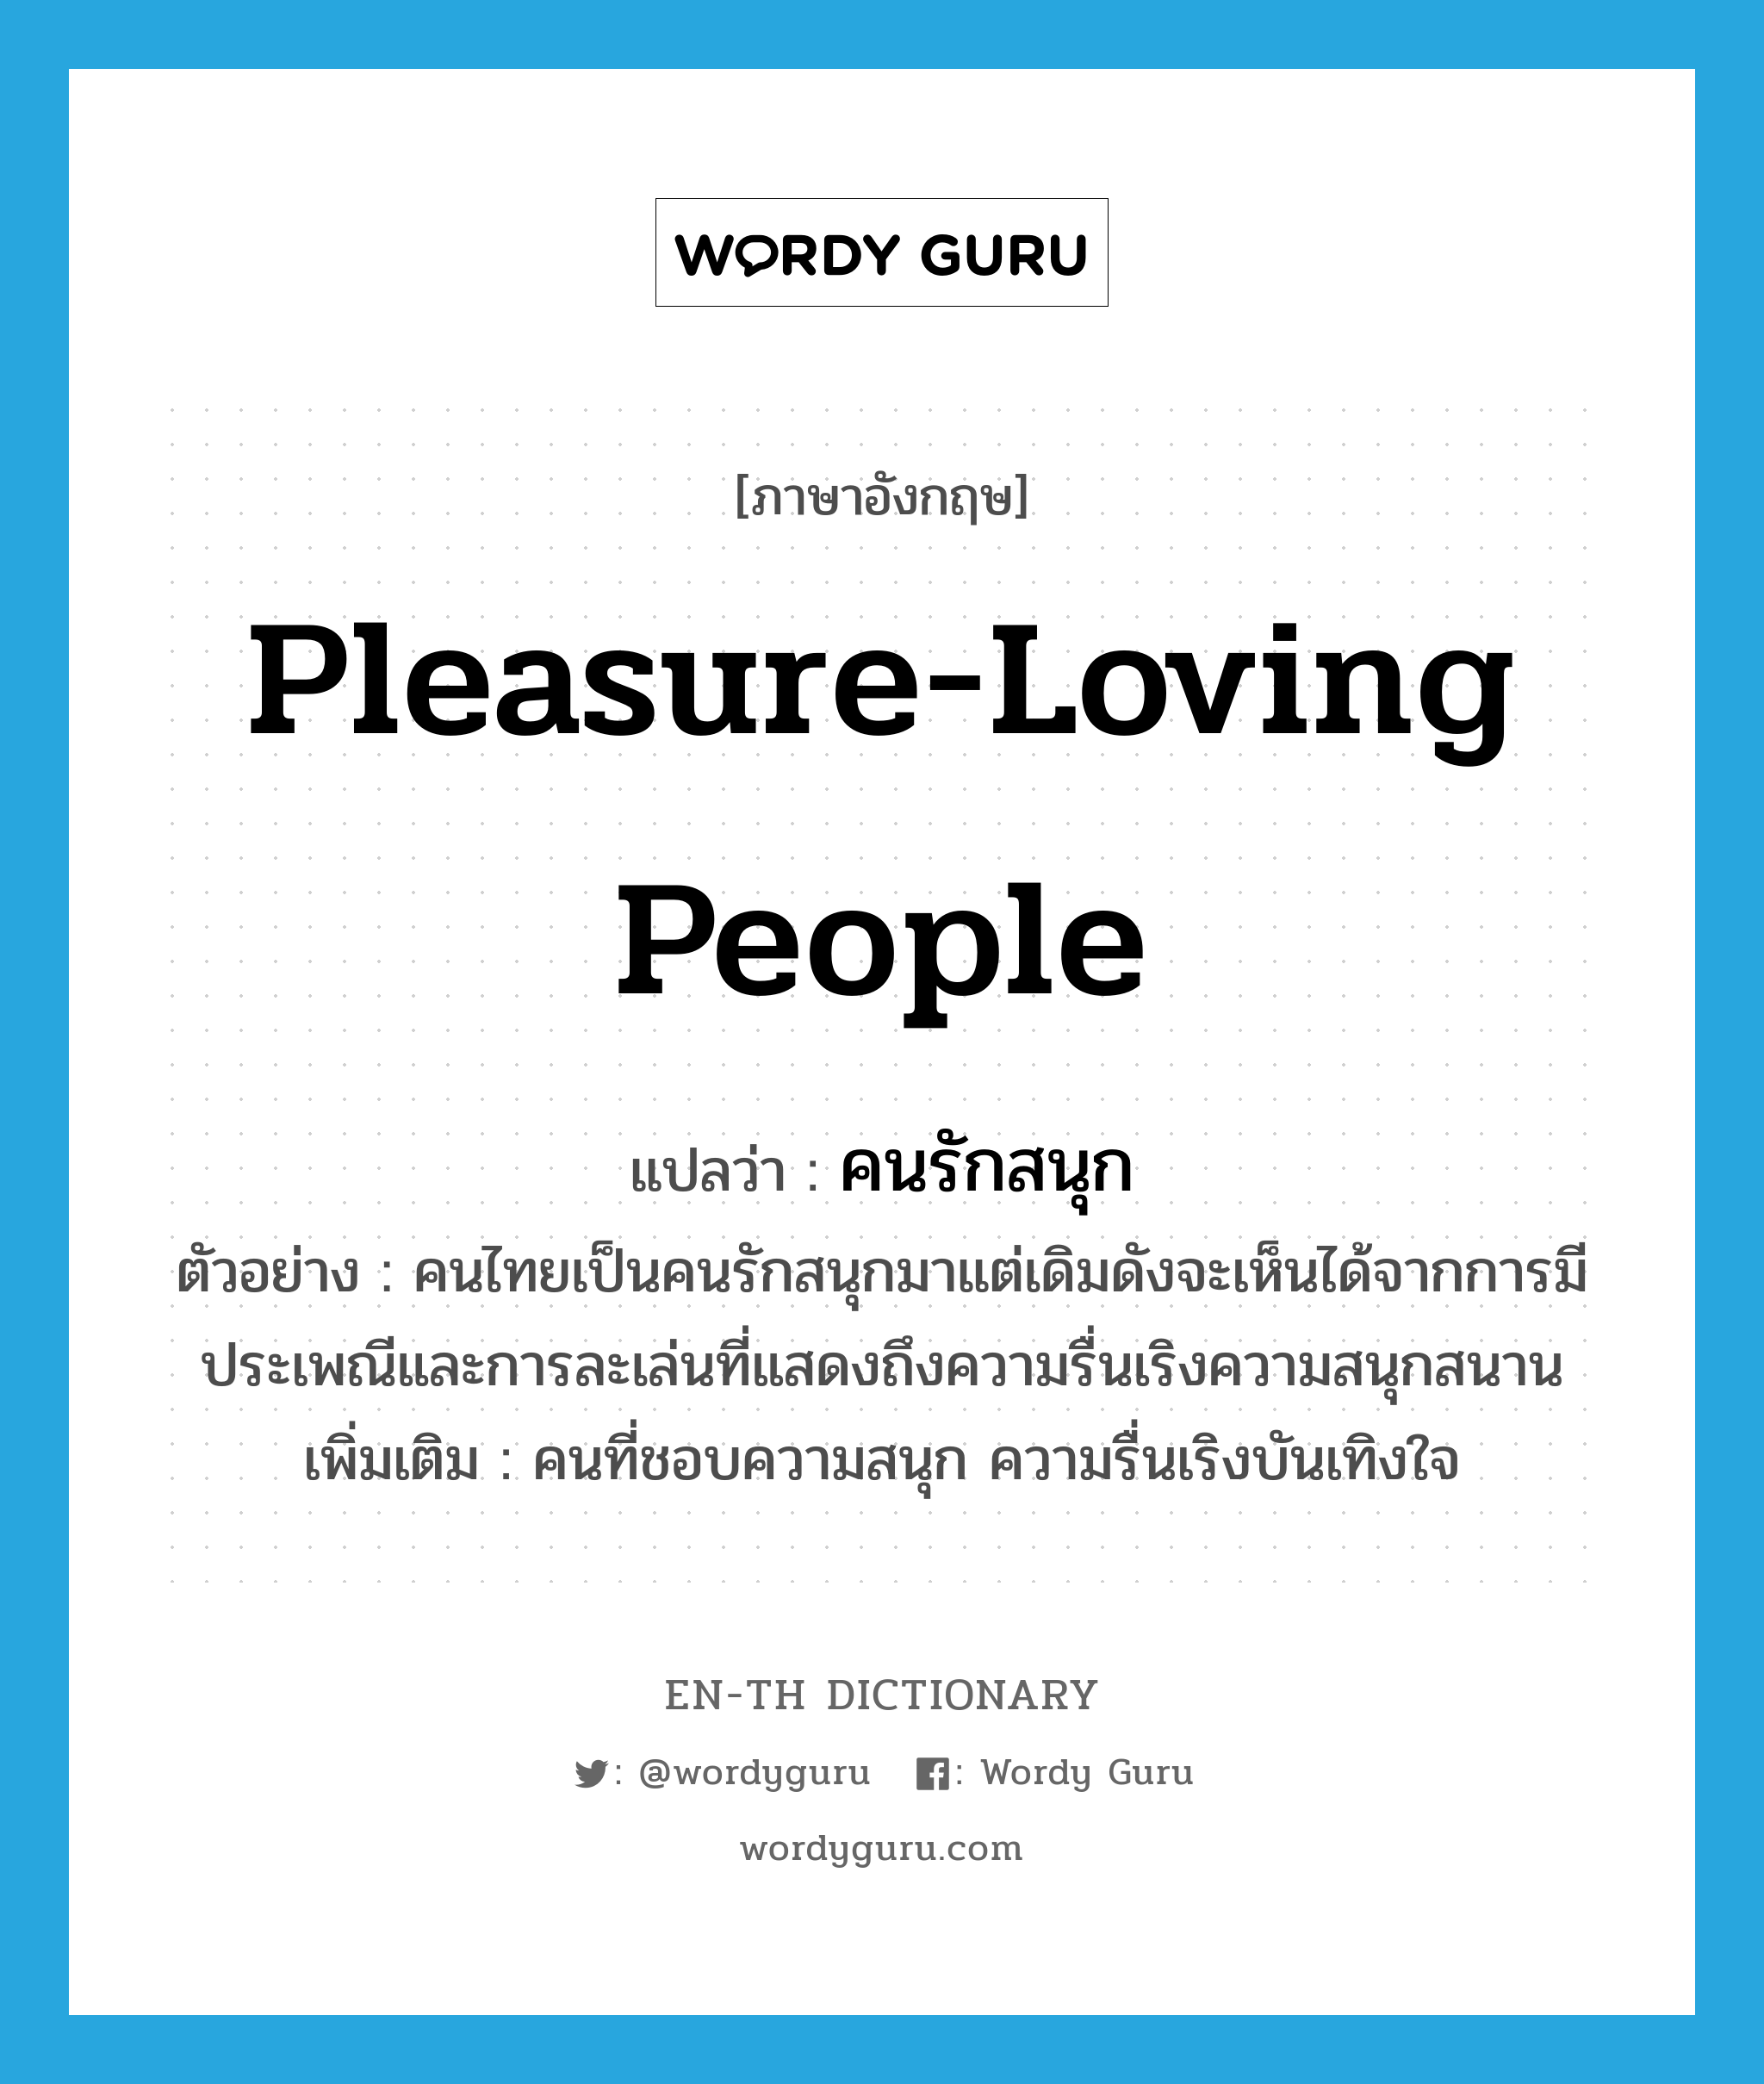 pleasure-loving people แปลว่า?, คำศัพท์ภาษาอังกฤษ pleasure-loving people แปลว่า คนรักสนุก ประเภท N ตัวอย่าง คนไทยเป็นคนรักสนุกมาแต่เดิมดังจะเห็นได้จากการมีประเพณีและการละเล่นที่แสดงถึงความรื่นเริงความสนุกสนาน เพิ่มเติม คนที่ชอบความสนุก ความรื่นเริงบันเทิงใจ หมวด N